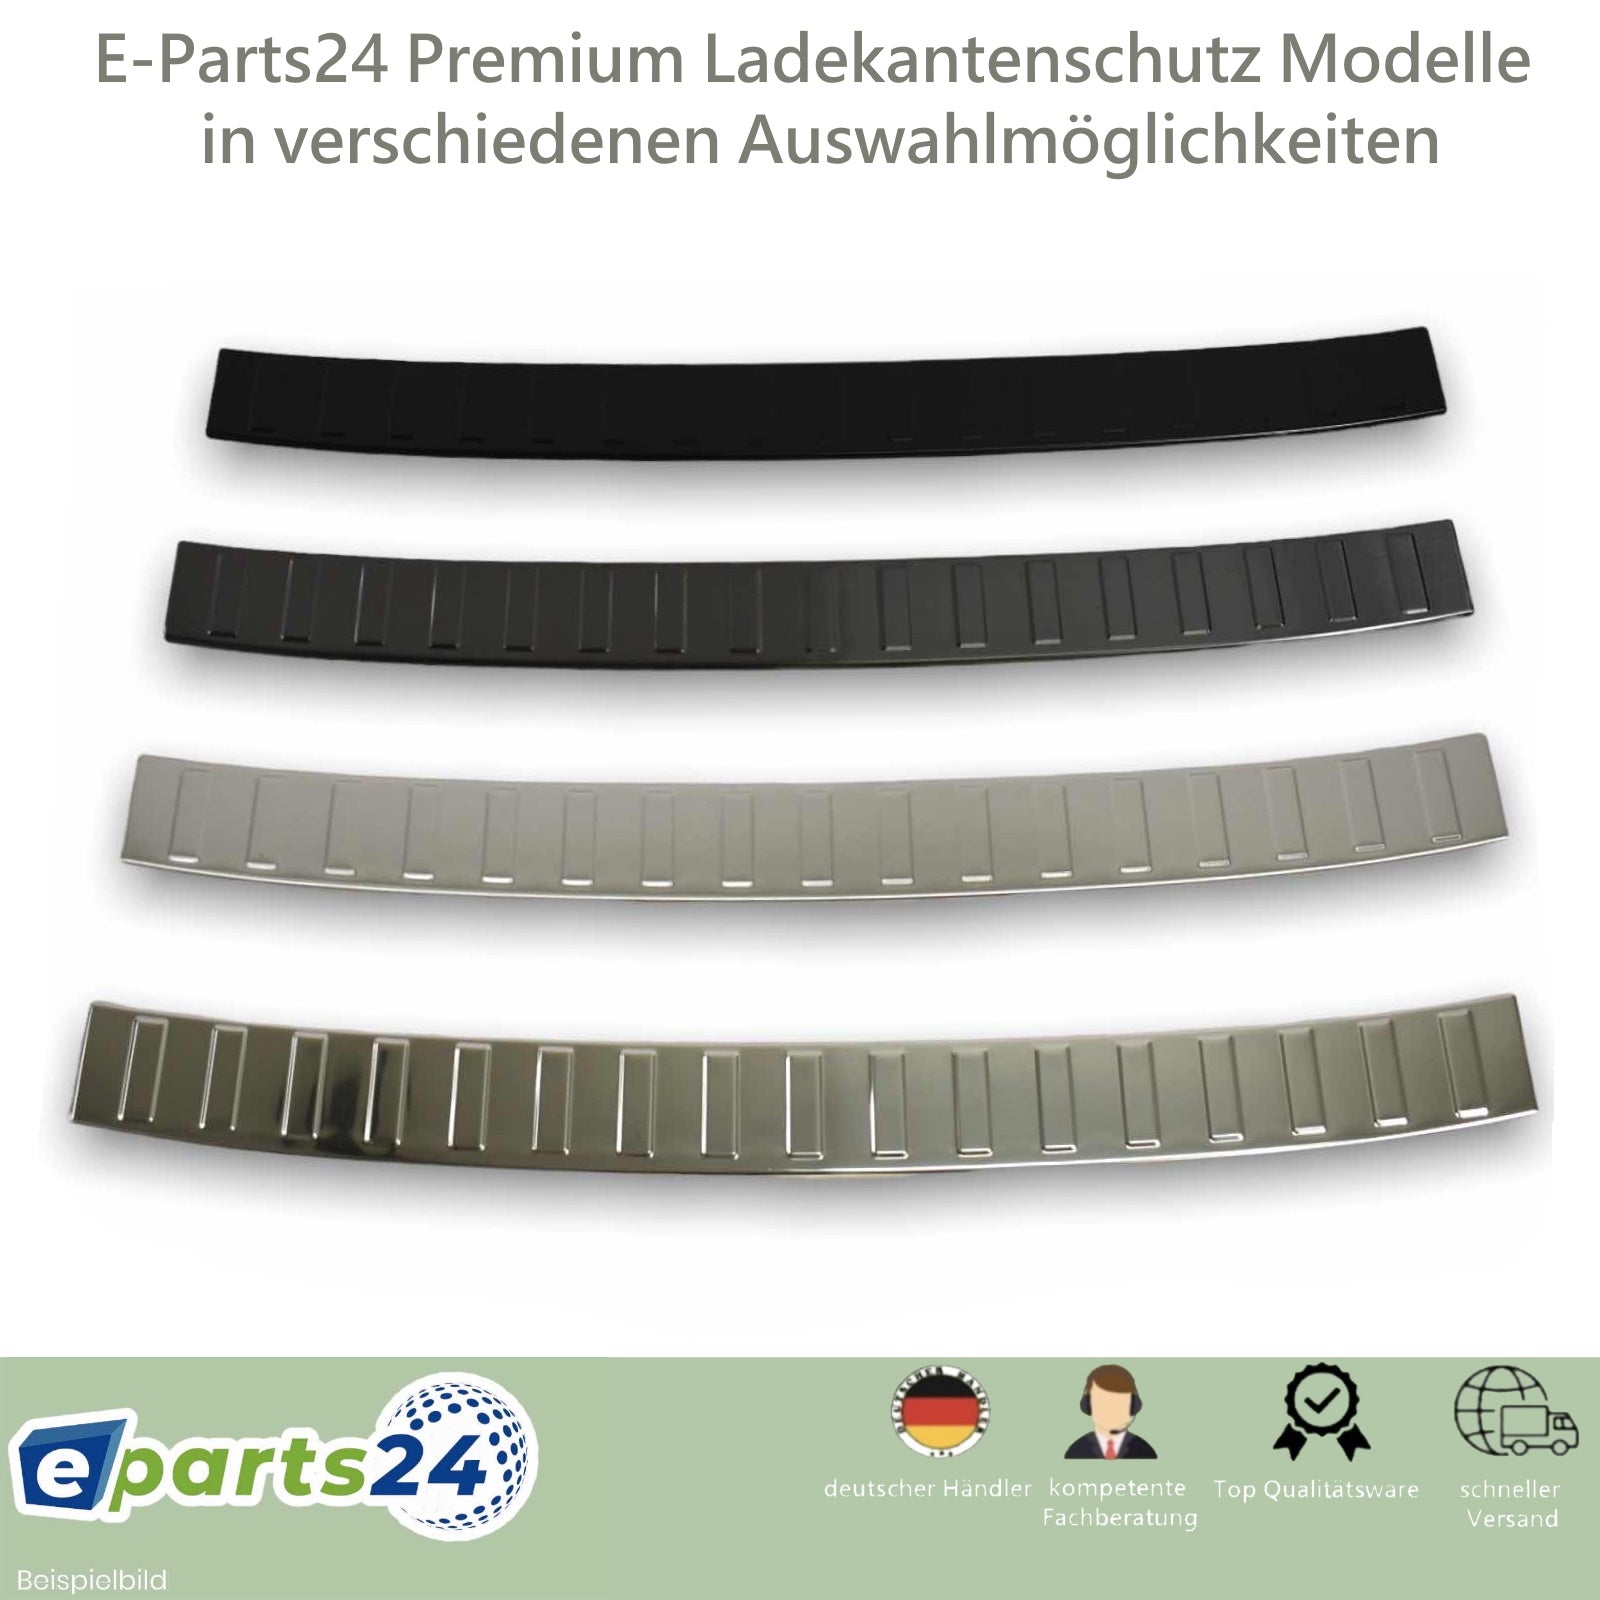 Ladekantenschutz Premium für VW T5 matt pu 2003-2015 – Edelstahl schwarz E-Parts24